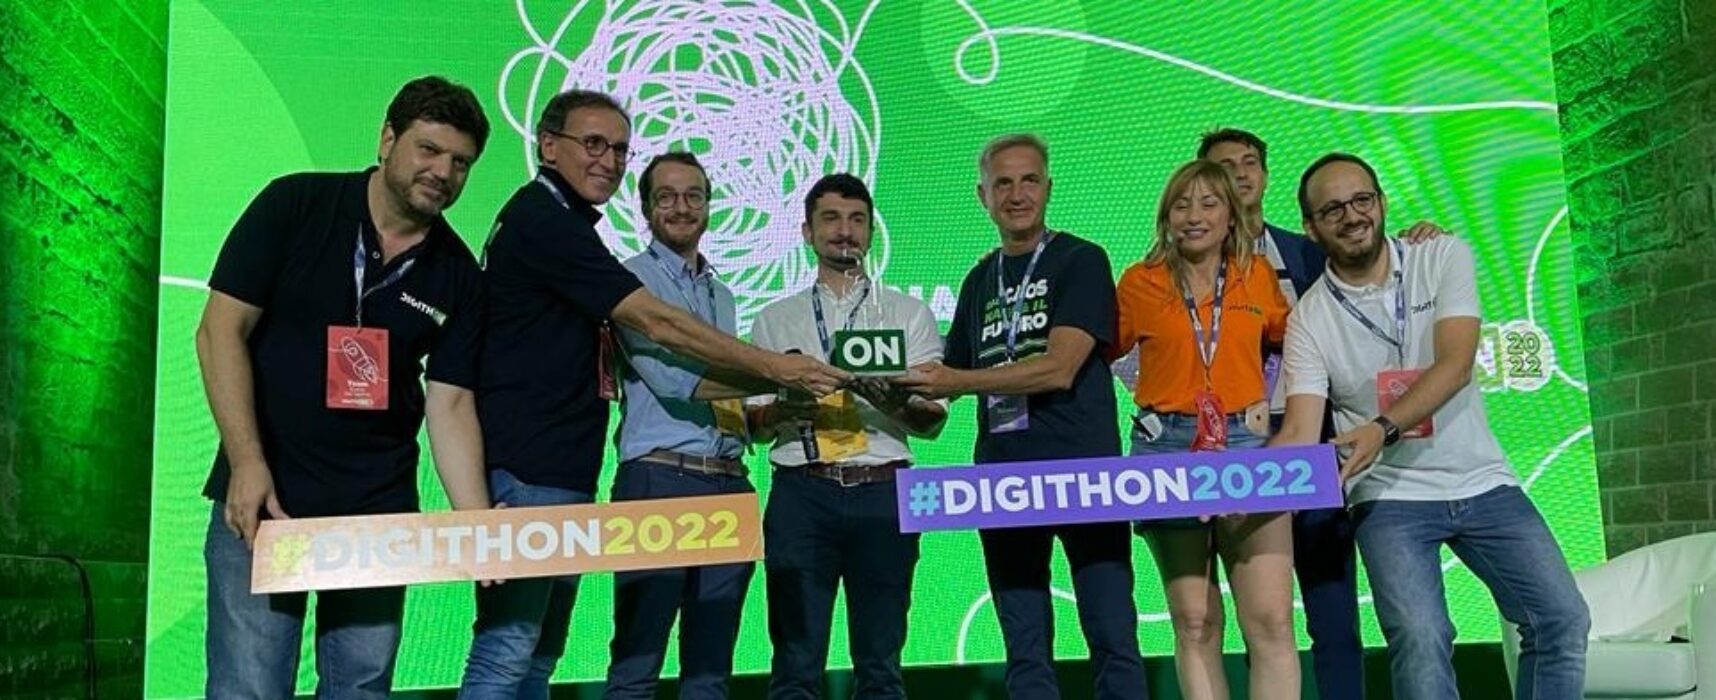 DigithON 2023: annunciate le startup finaliste, competition dal 31 agosto al 3 settembre